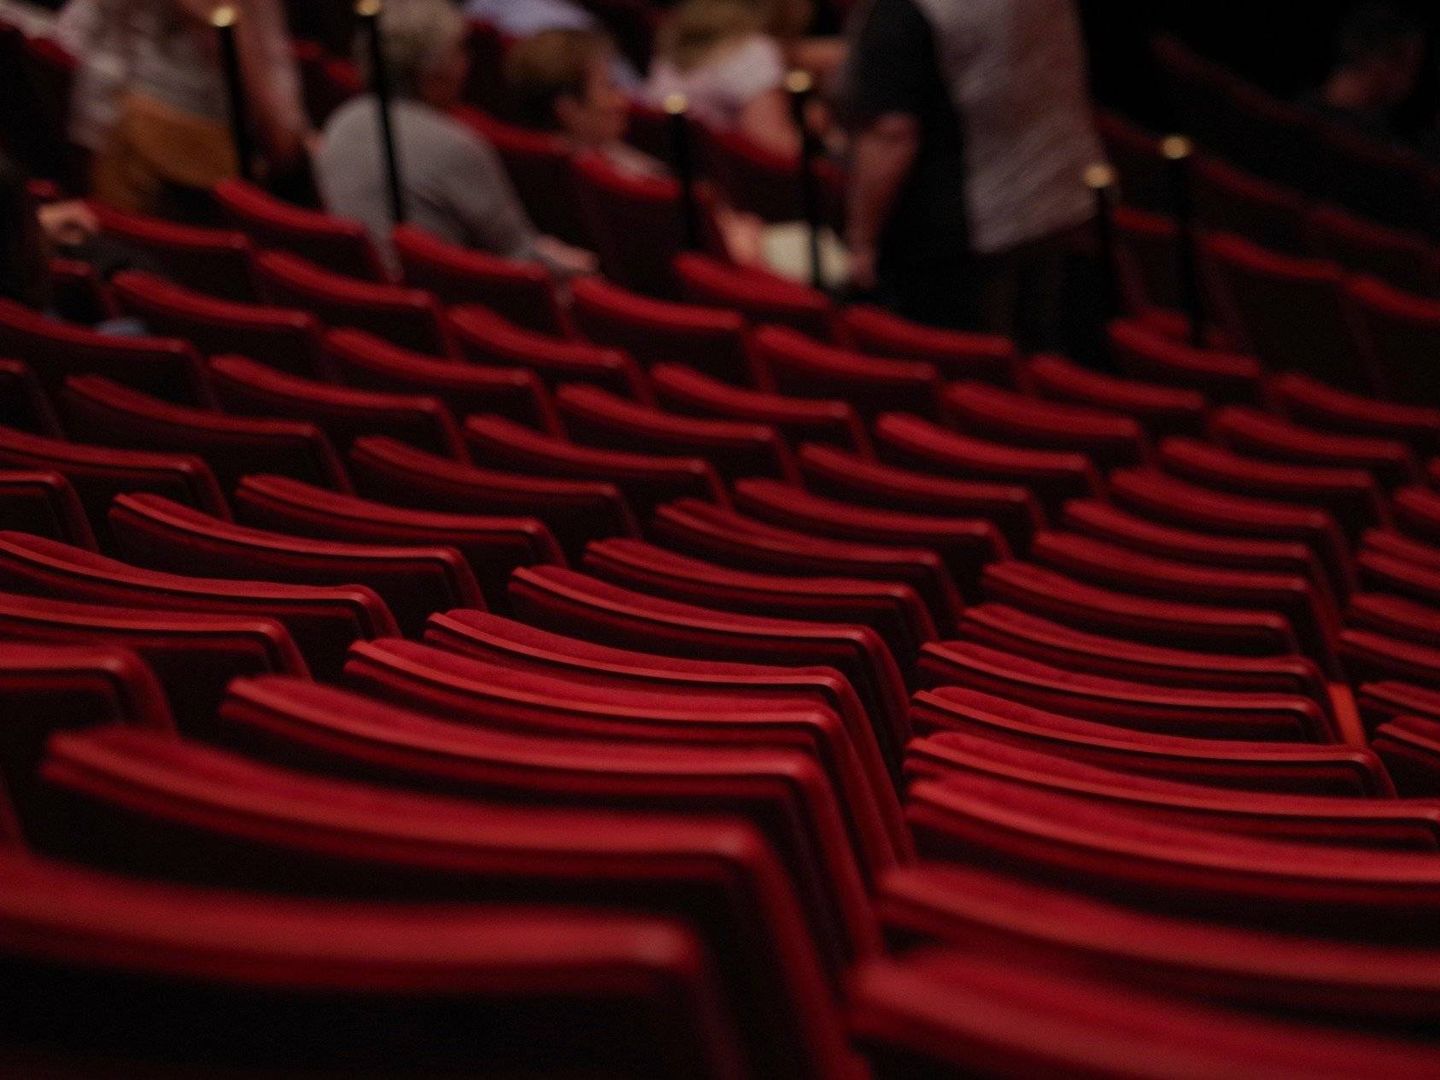 Butacas en un teatro. (Pixabay)